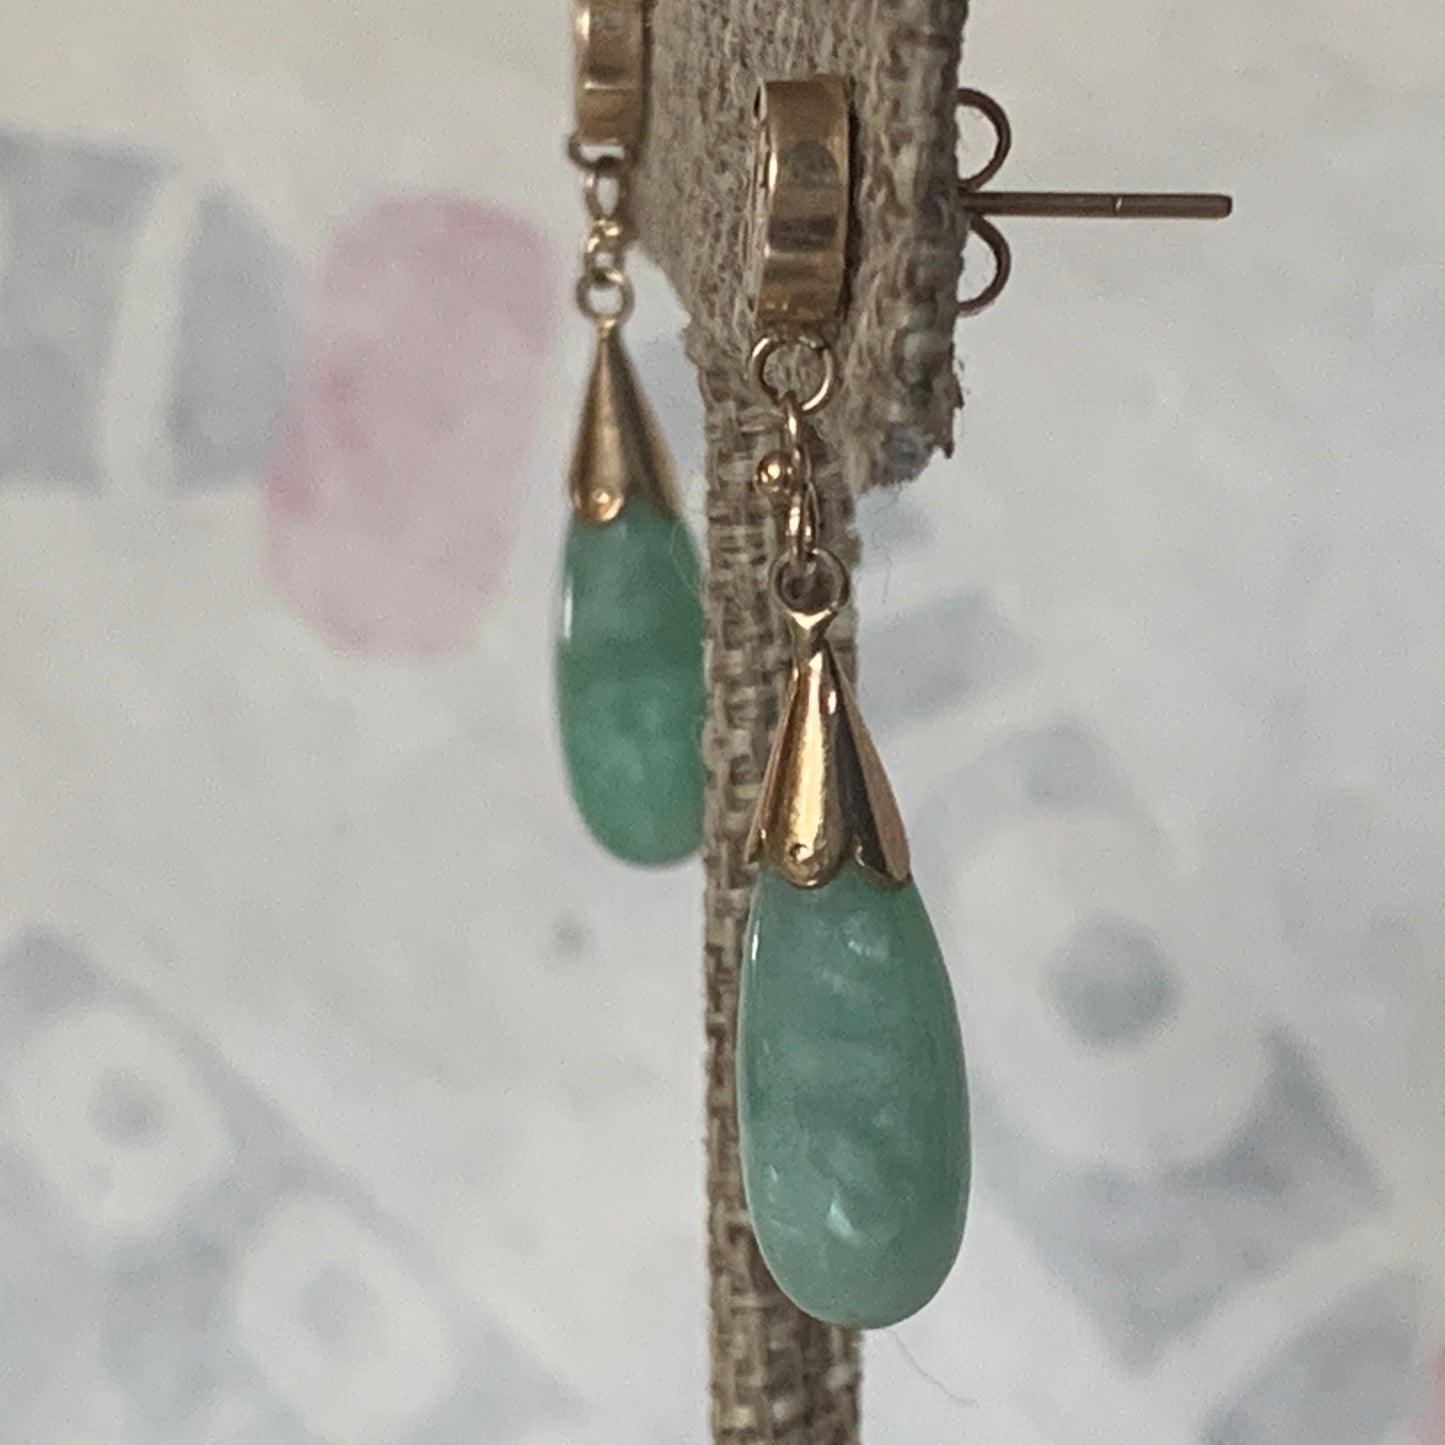 A jade earring